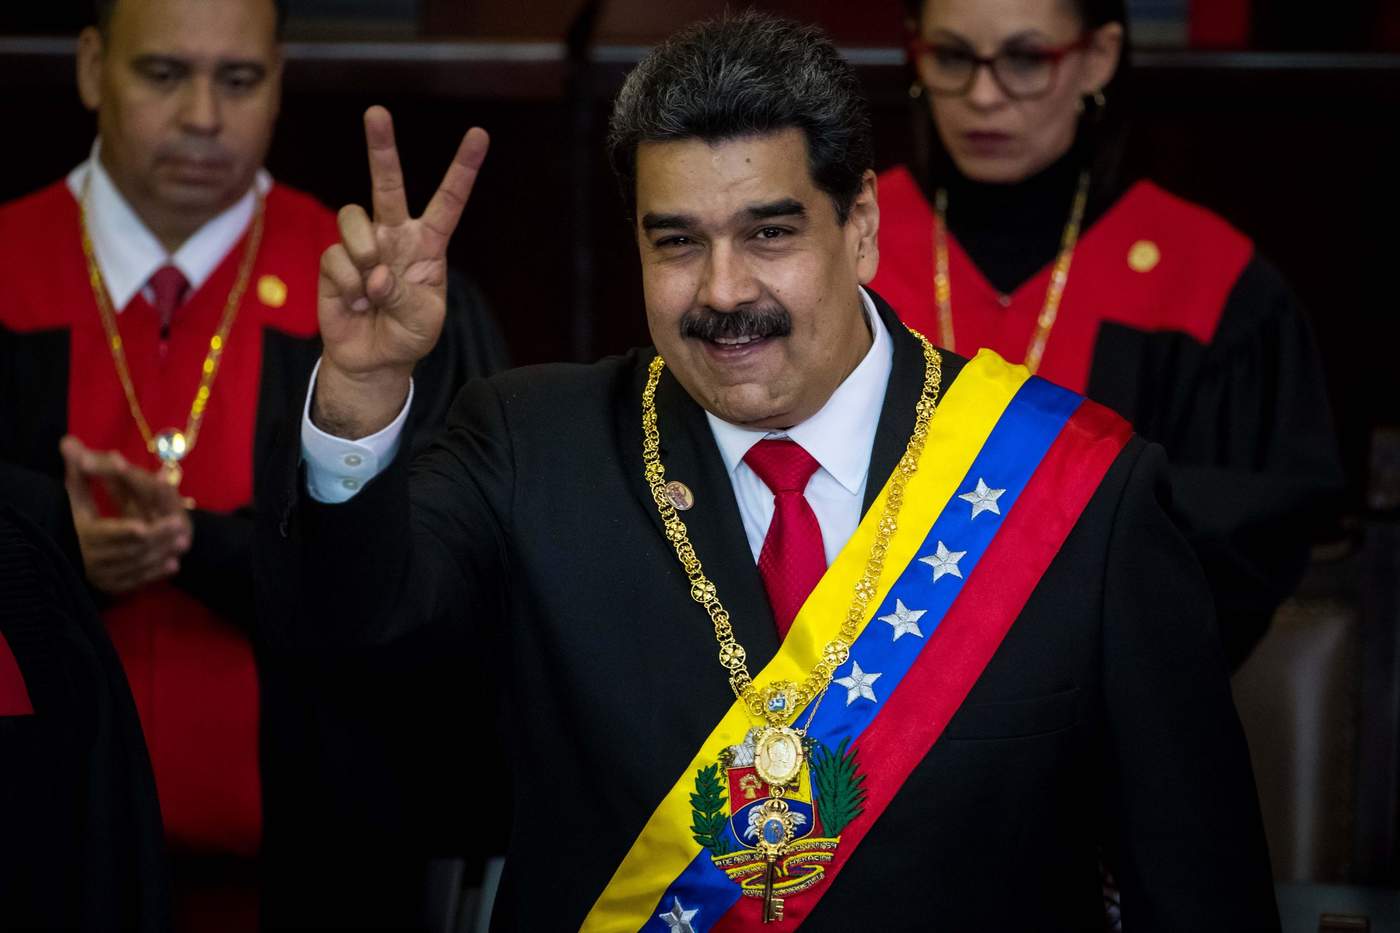 El presidente de Venezuela, su grito de ¡Viva México! mientras enlistaba a los asistentes, tomó por sorpresa a los presentes y ahora a las redes sociales. (ARCHIVO)

